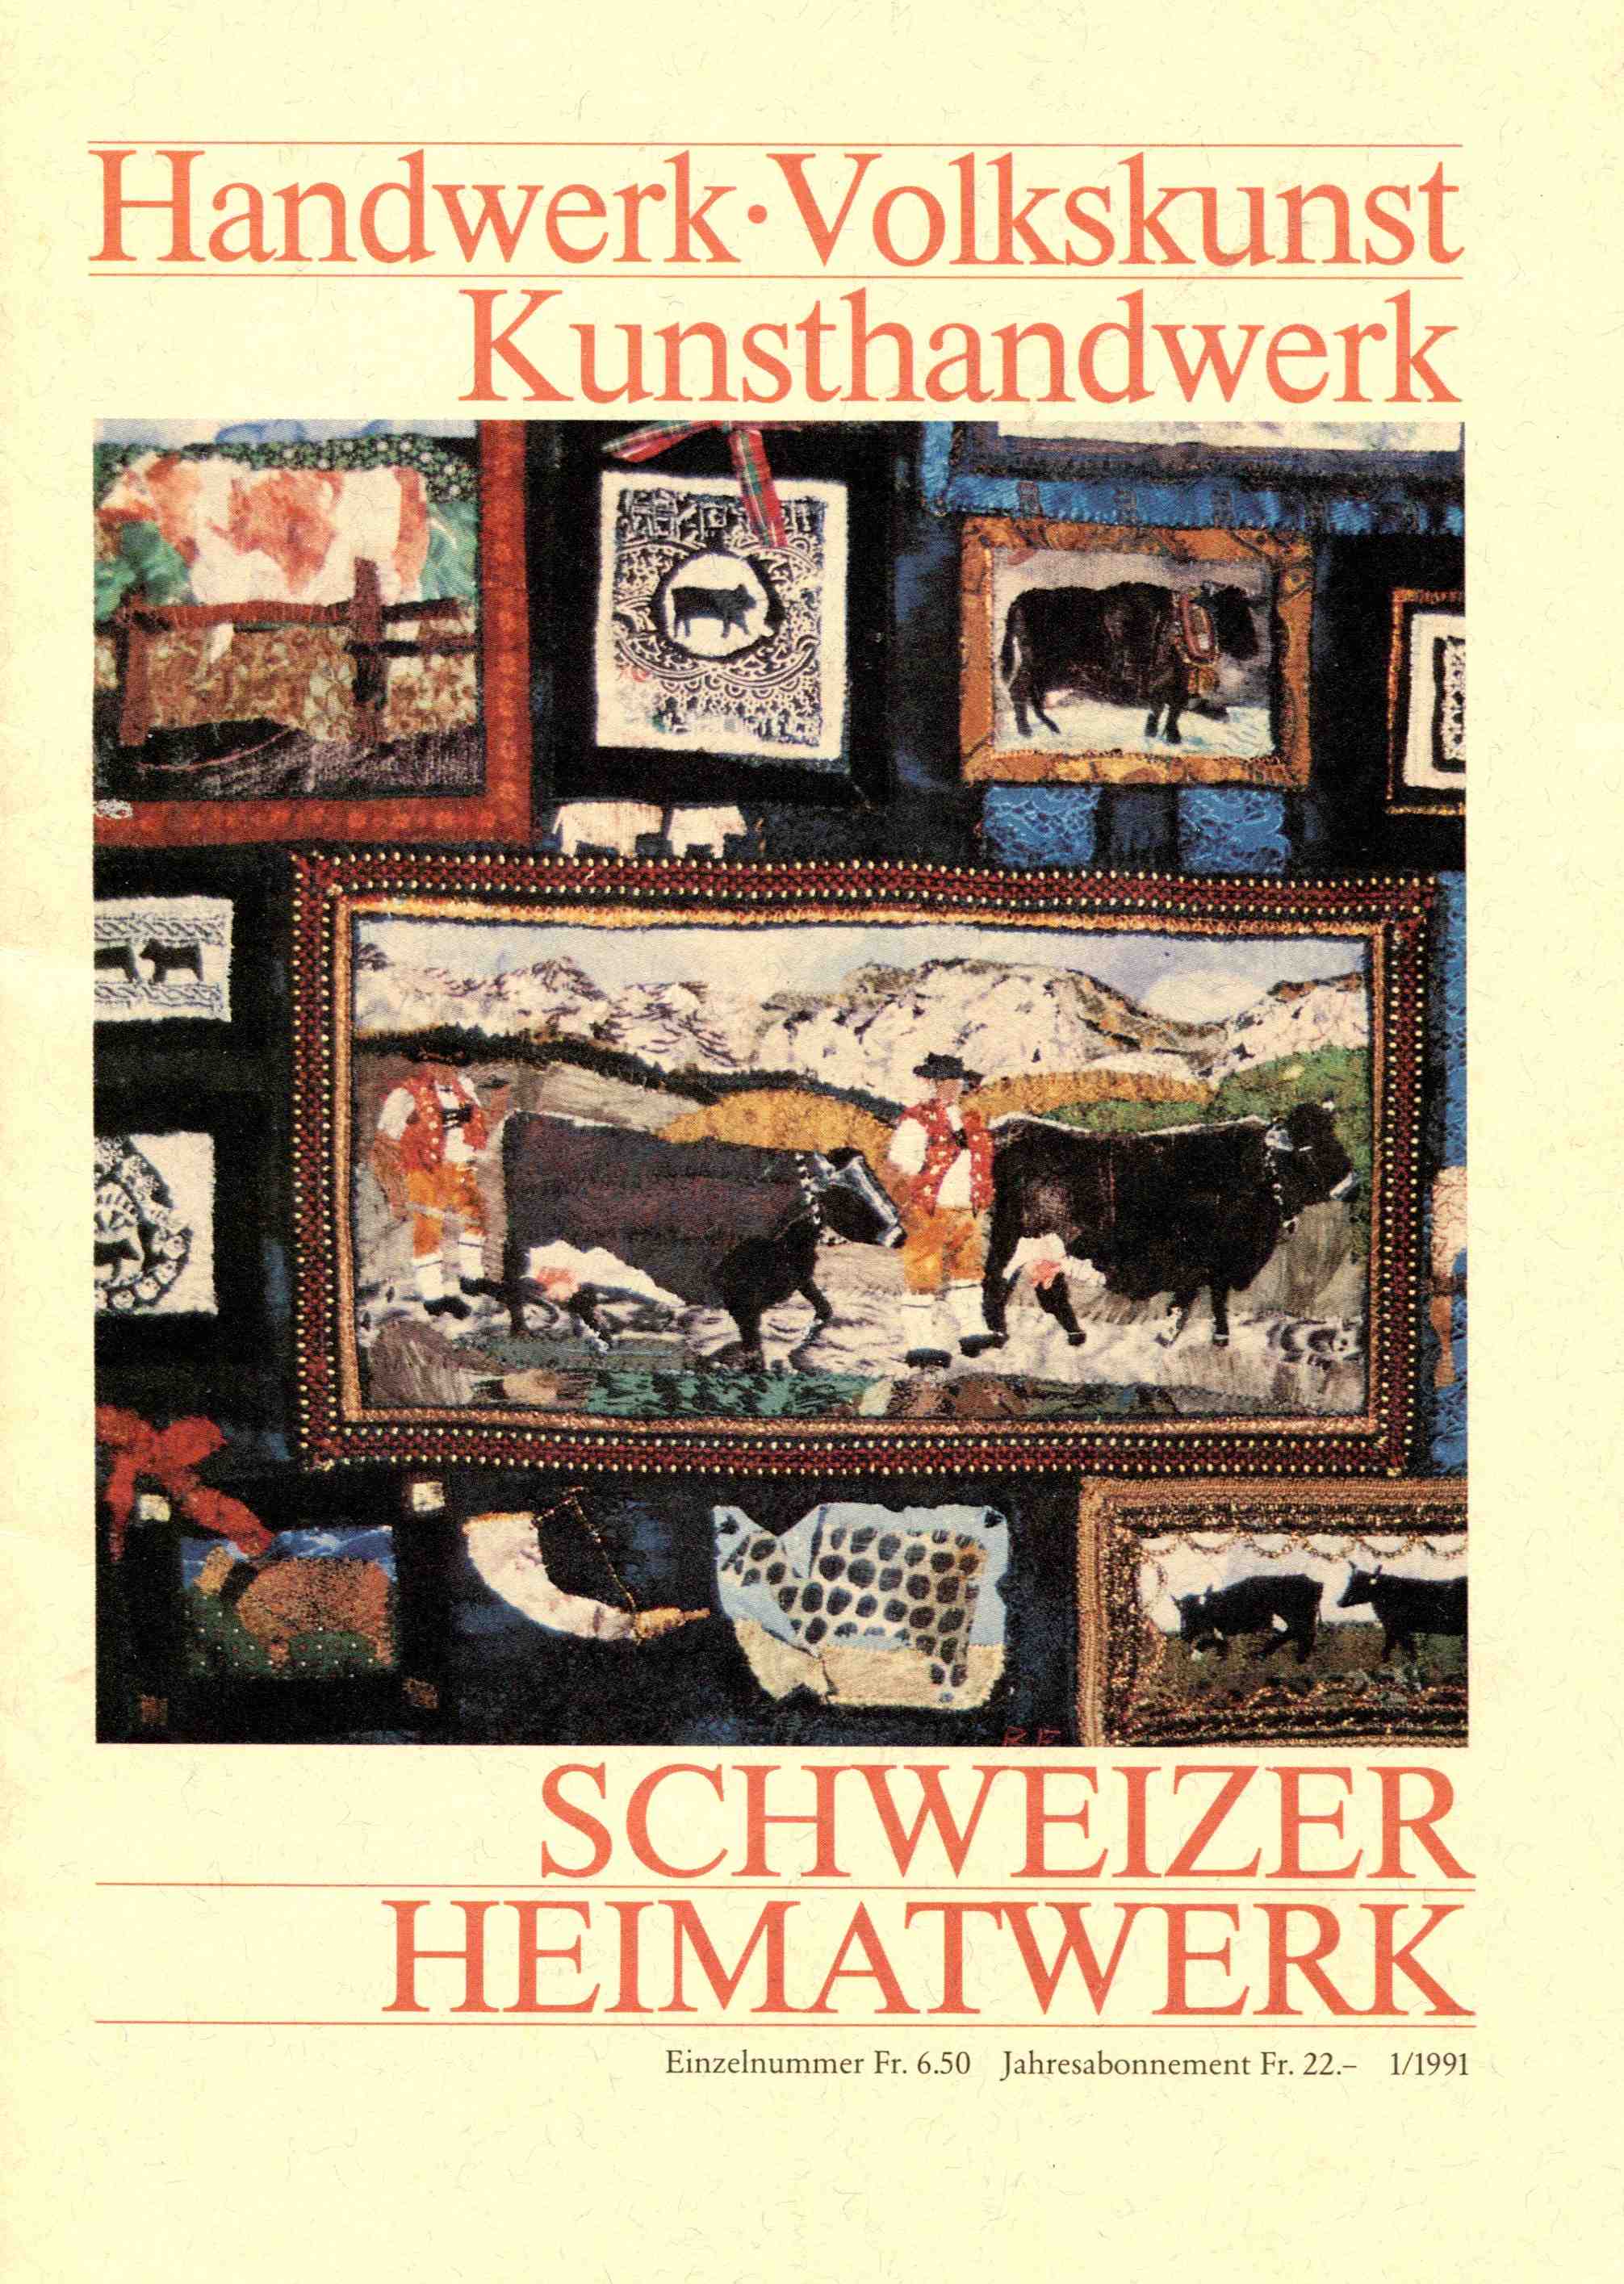 Schweizer Heimatwerk 1/1991